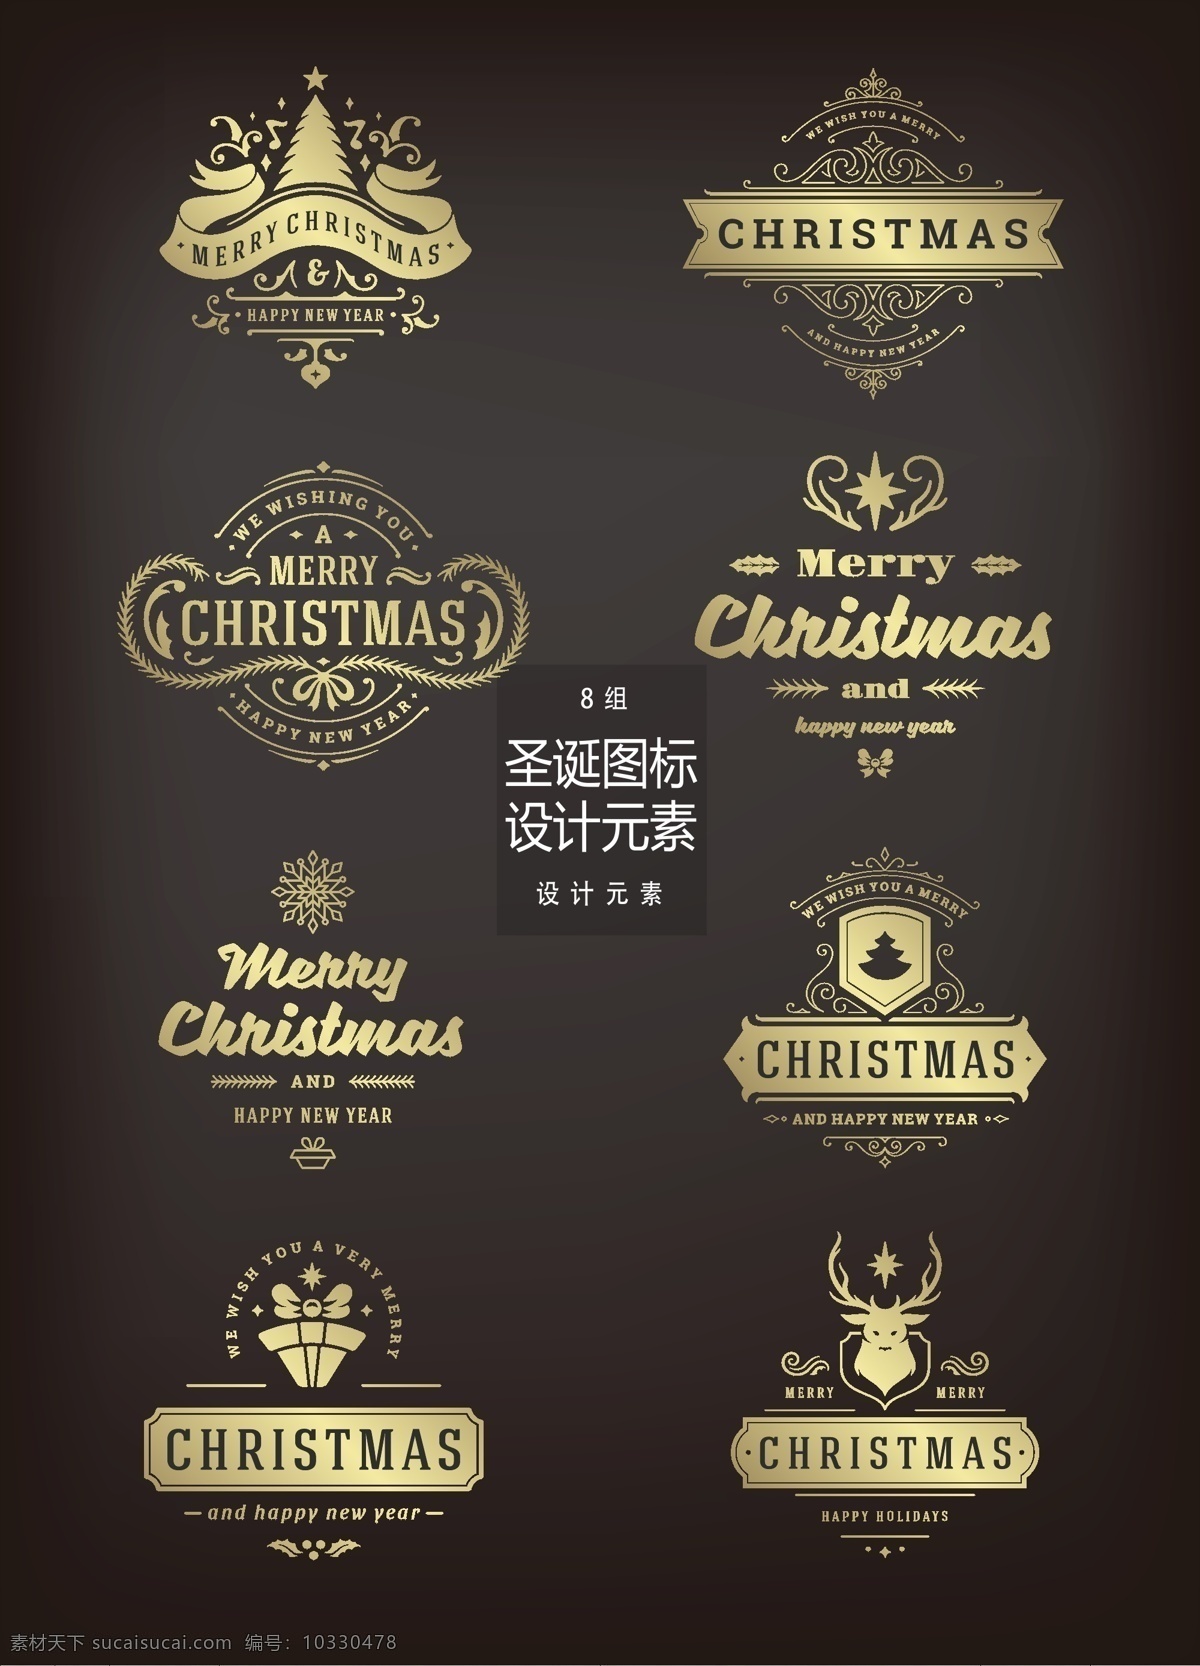 金色 圣诞节 图标 矢量 元素 丝带 雪花 礼物 设计元素 圣诞 圣诞节图标 金色图标 金色花纹 花纹设计 手绘花纹 驯鹿